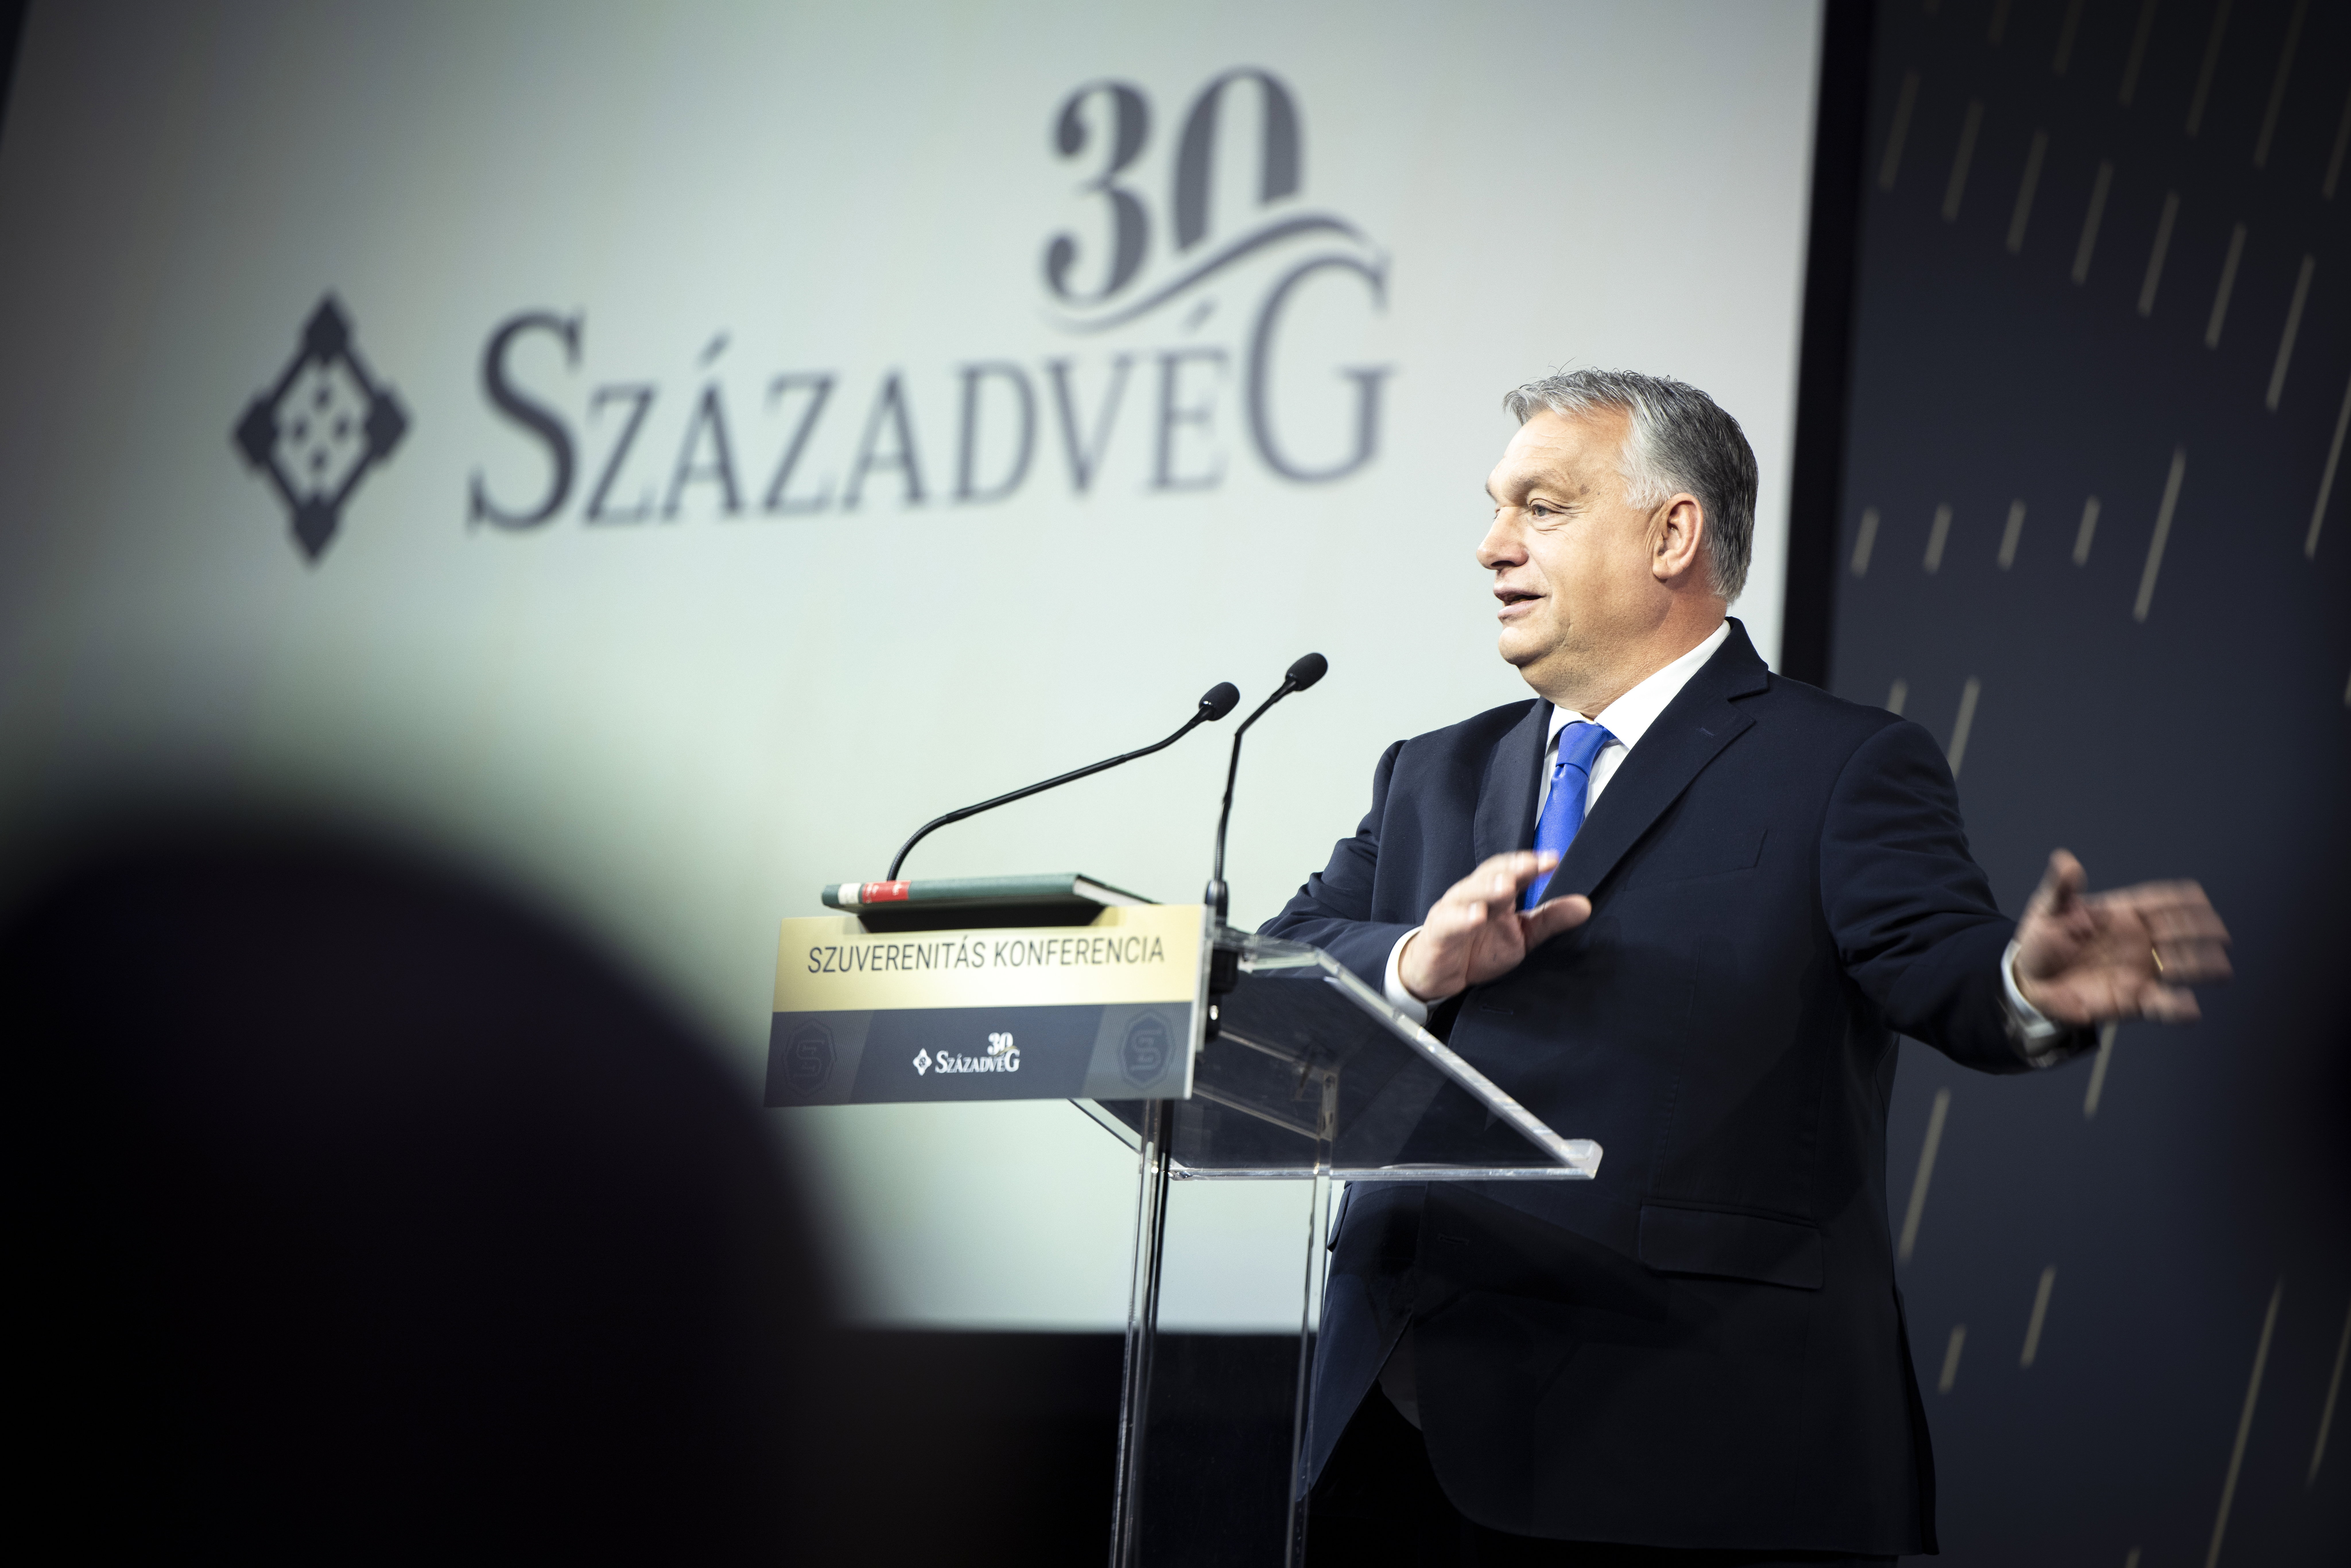 24 milliárdért ad tanácsokat az Orbán-kormánynak a Századvég egyik alapítványa 